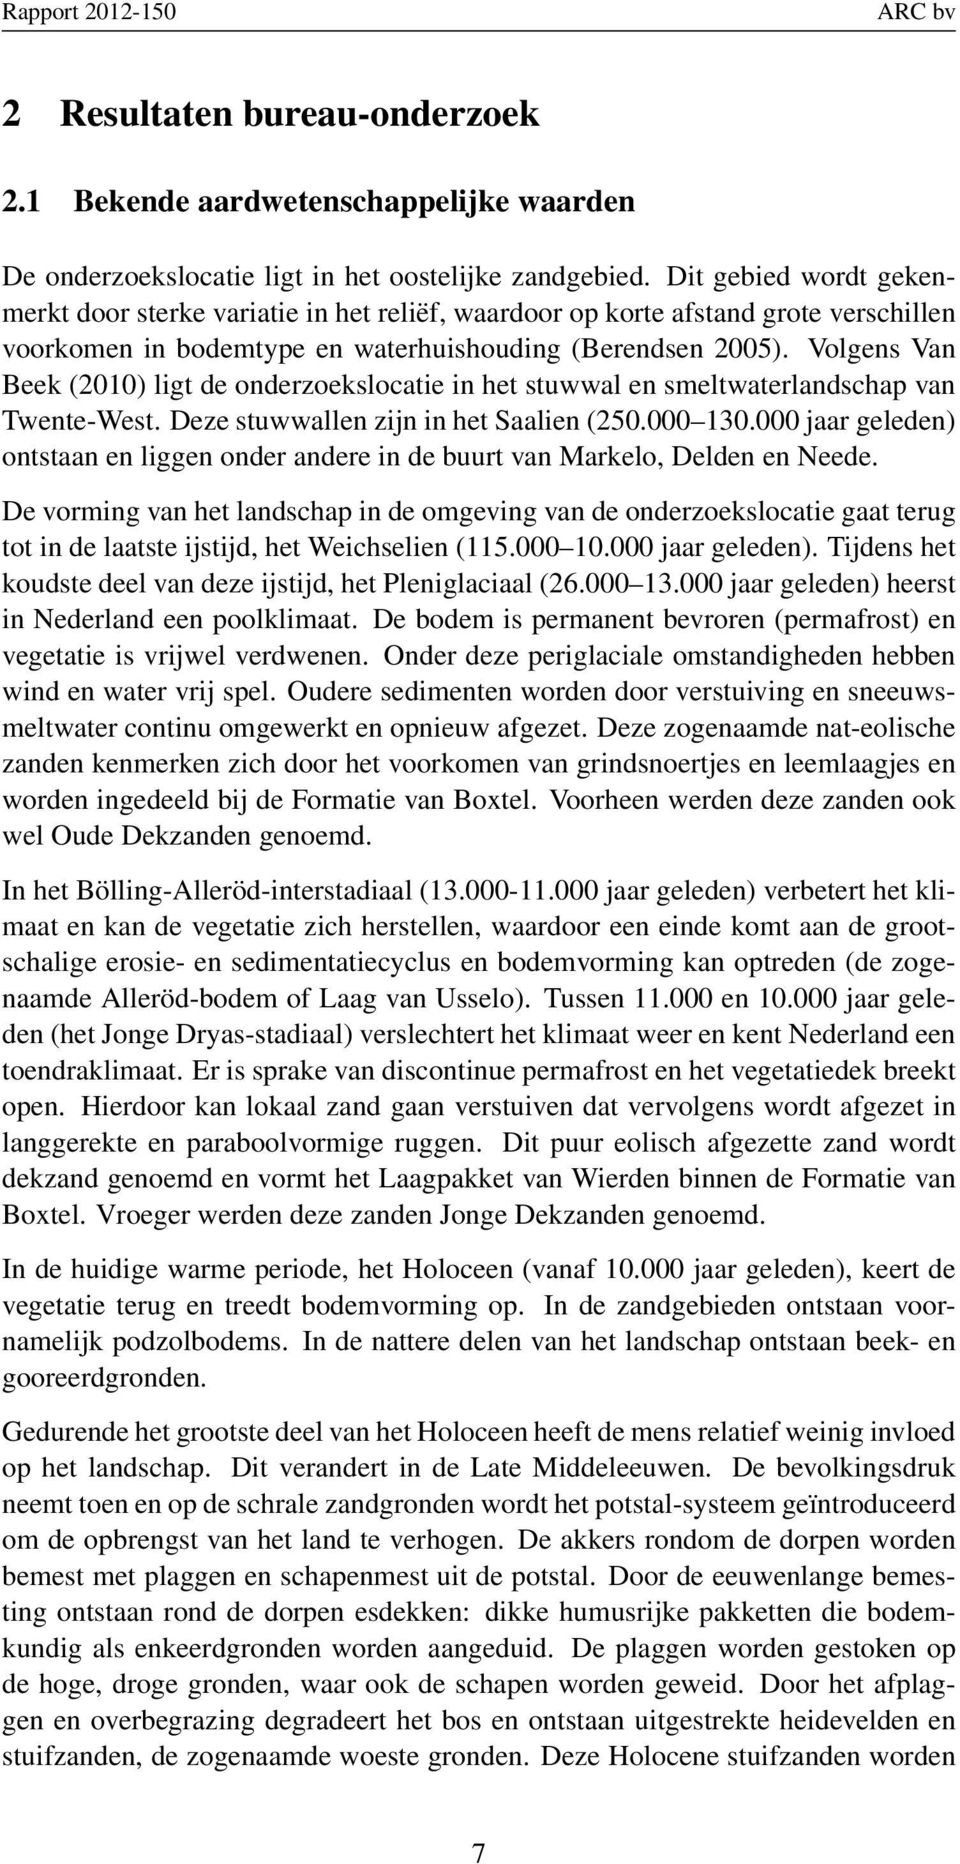 Volgens Van Beek (2010) ligt de onderzoekslocatie in het stuwwal en smeltwaterlandschap van Twente-West. Deze stuwwallen zijn in het Saalien (250.000 130.